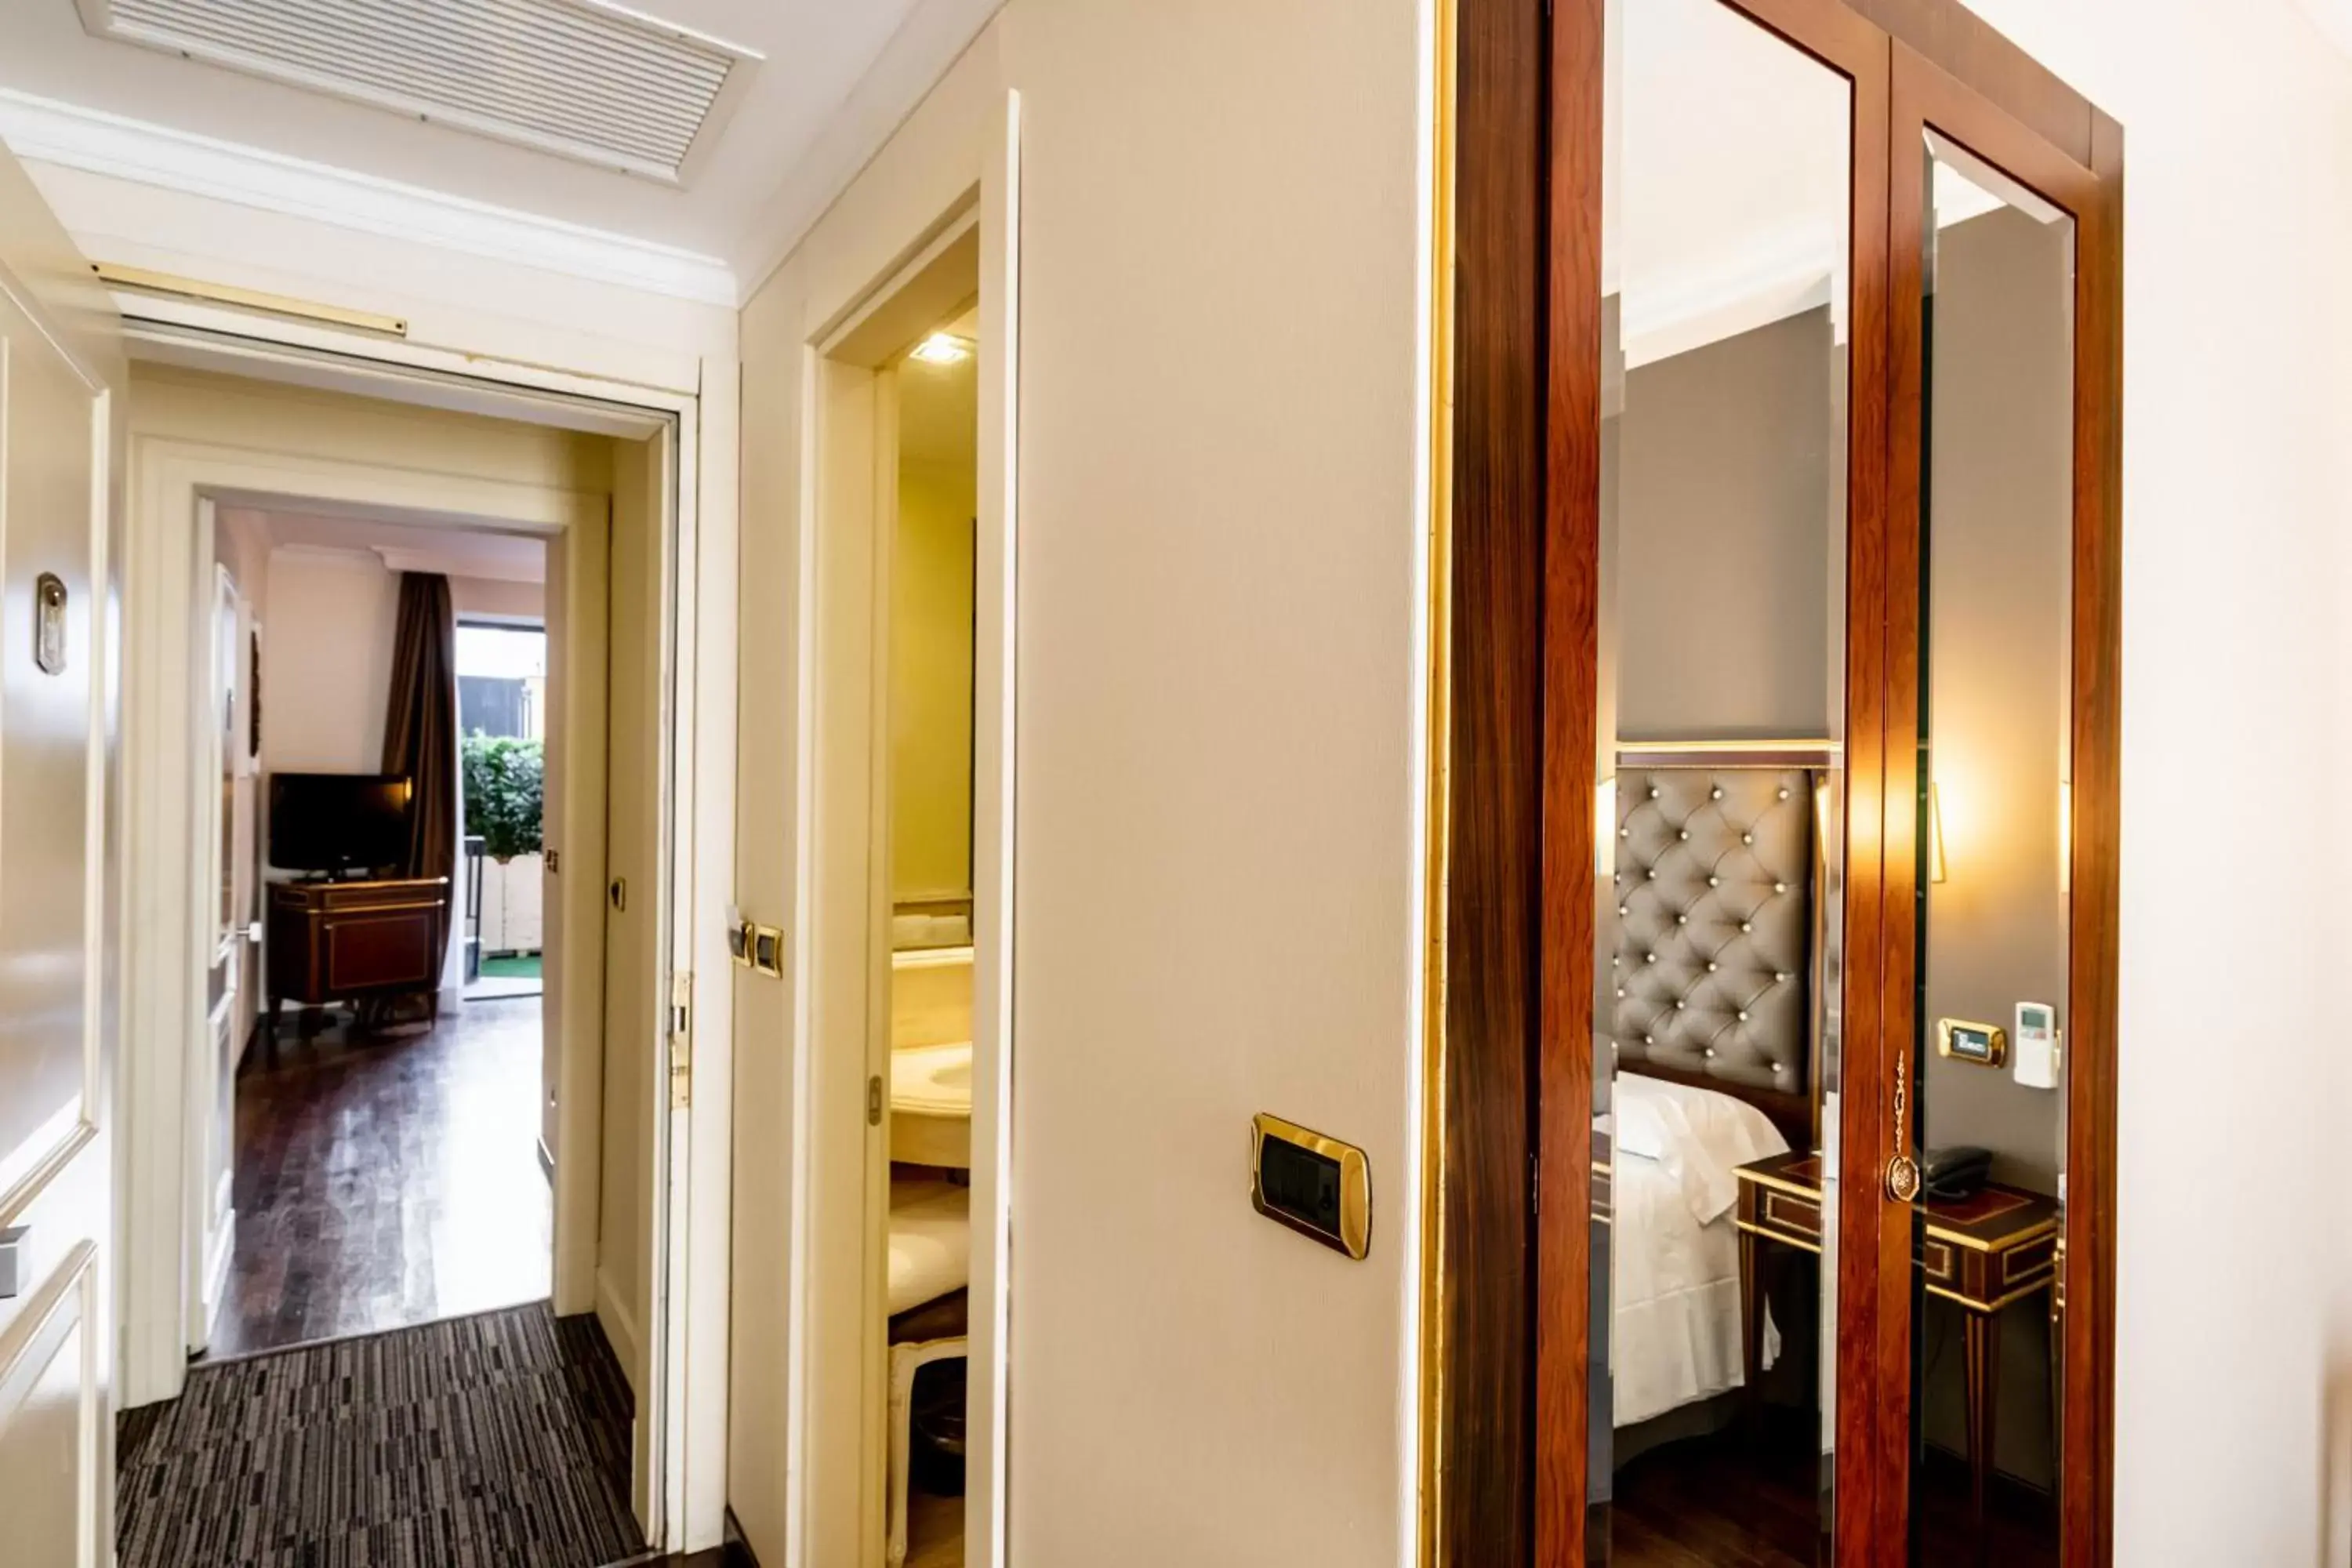 Bedroom, Bathroom in Trilussa Palace Hotel Congress & Spa